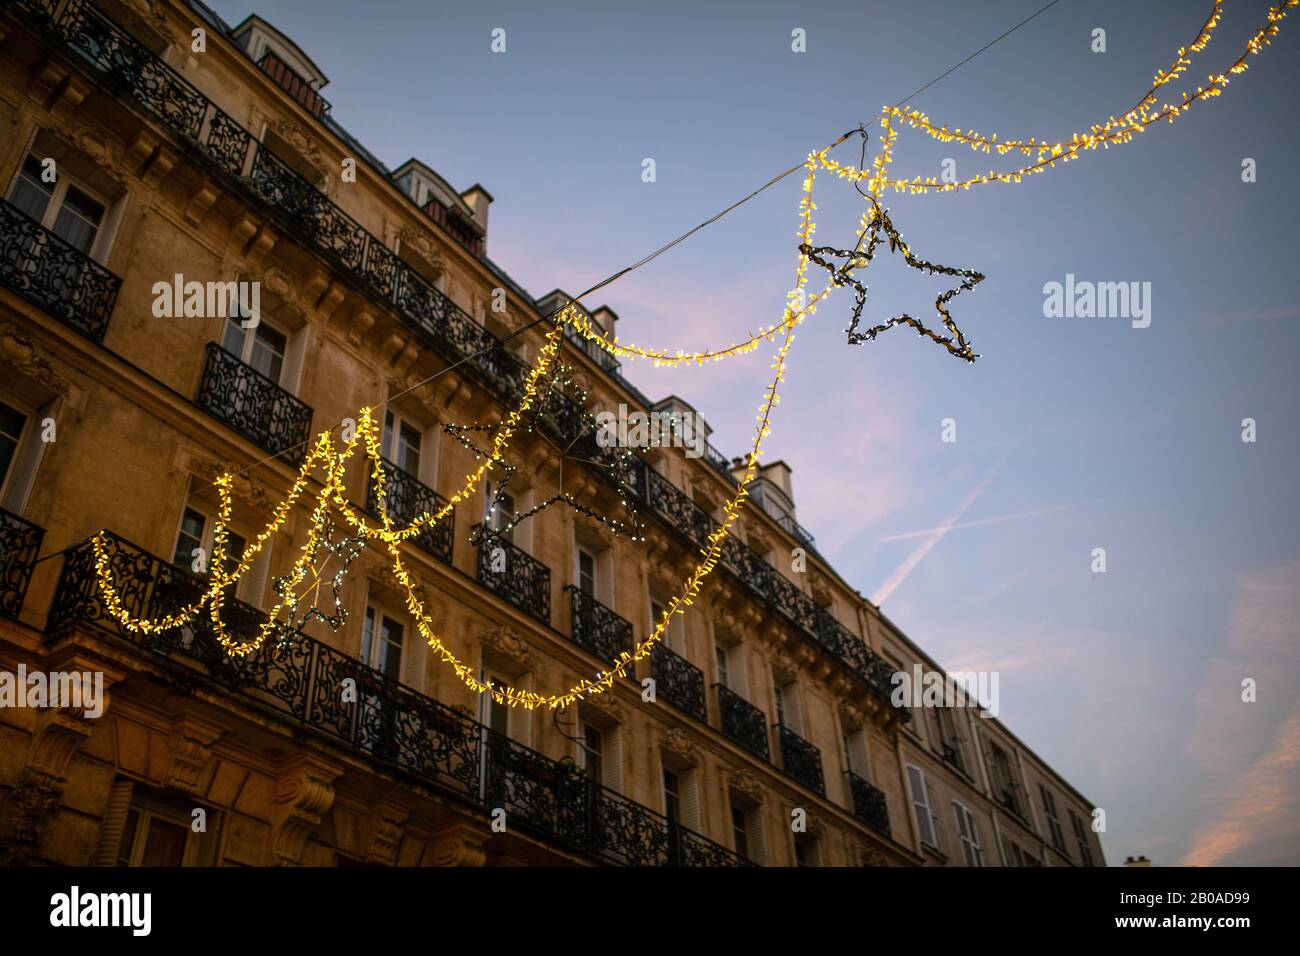 Weihnachtsbeleuchtung in einer Straße in Paris, Frankreich um Weihnachten. Stockfoto